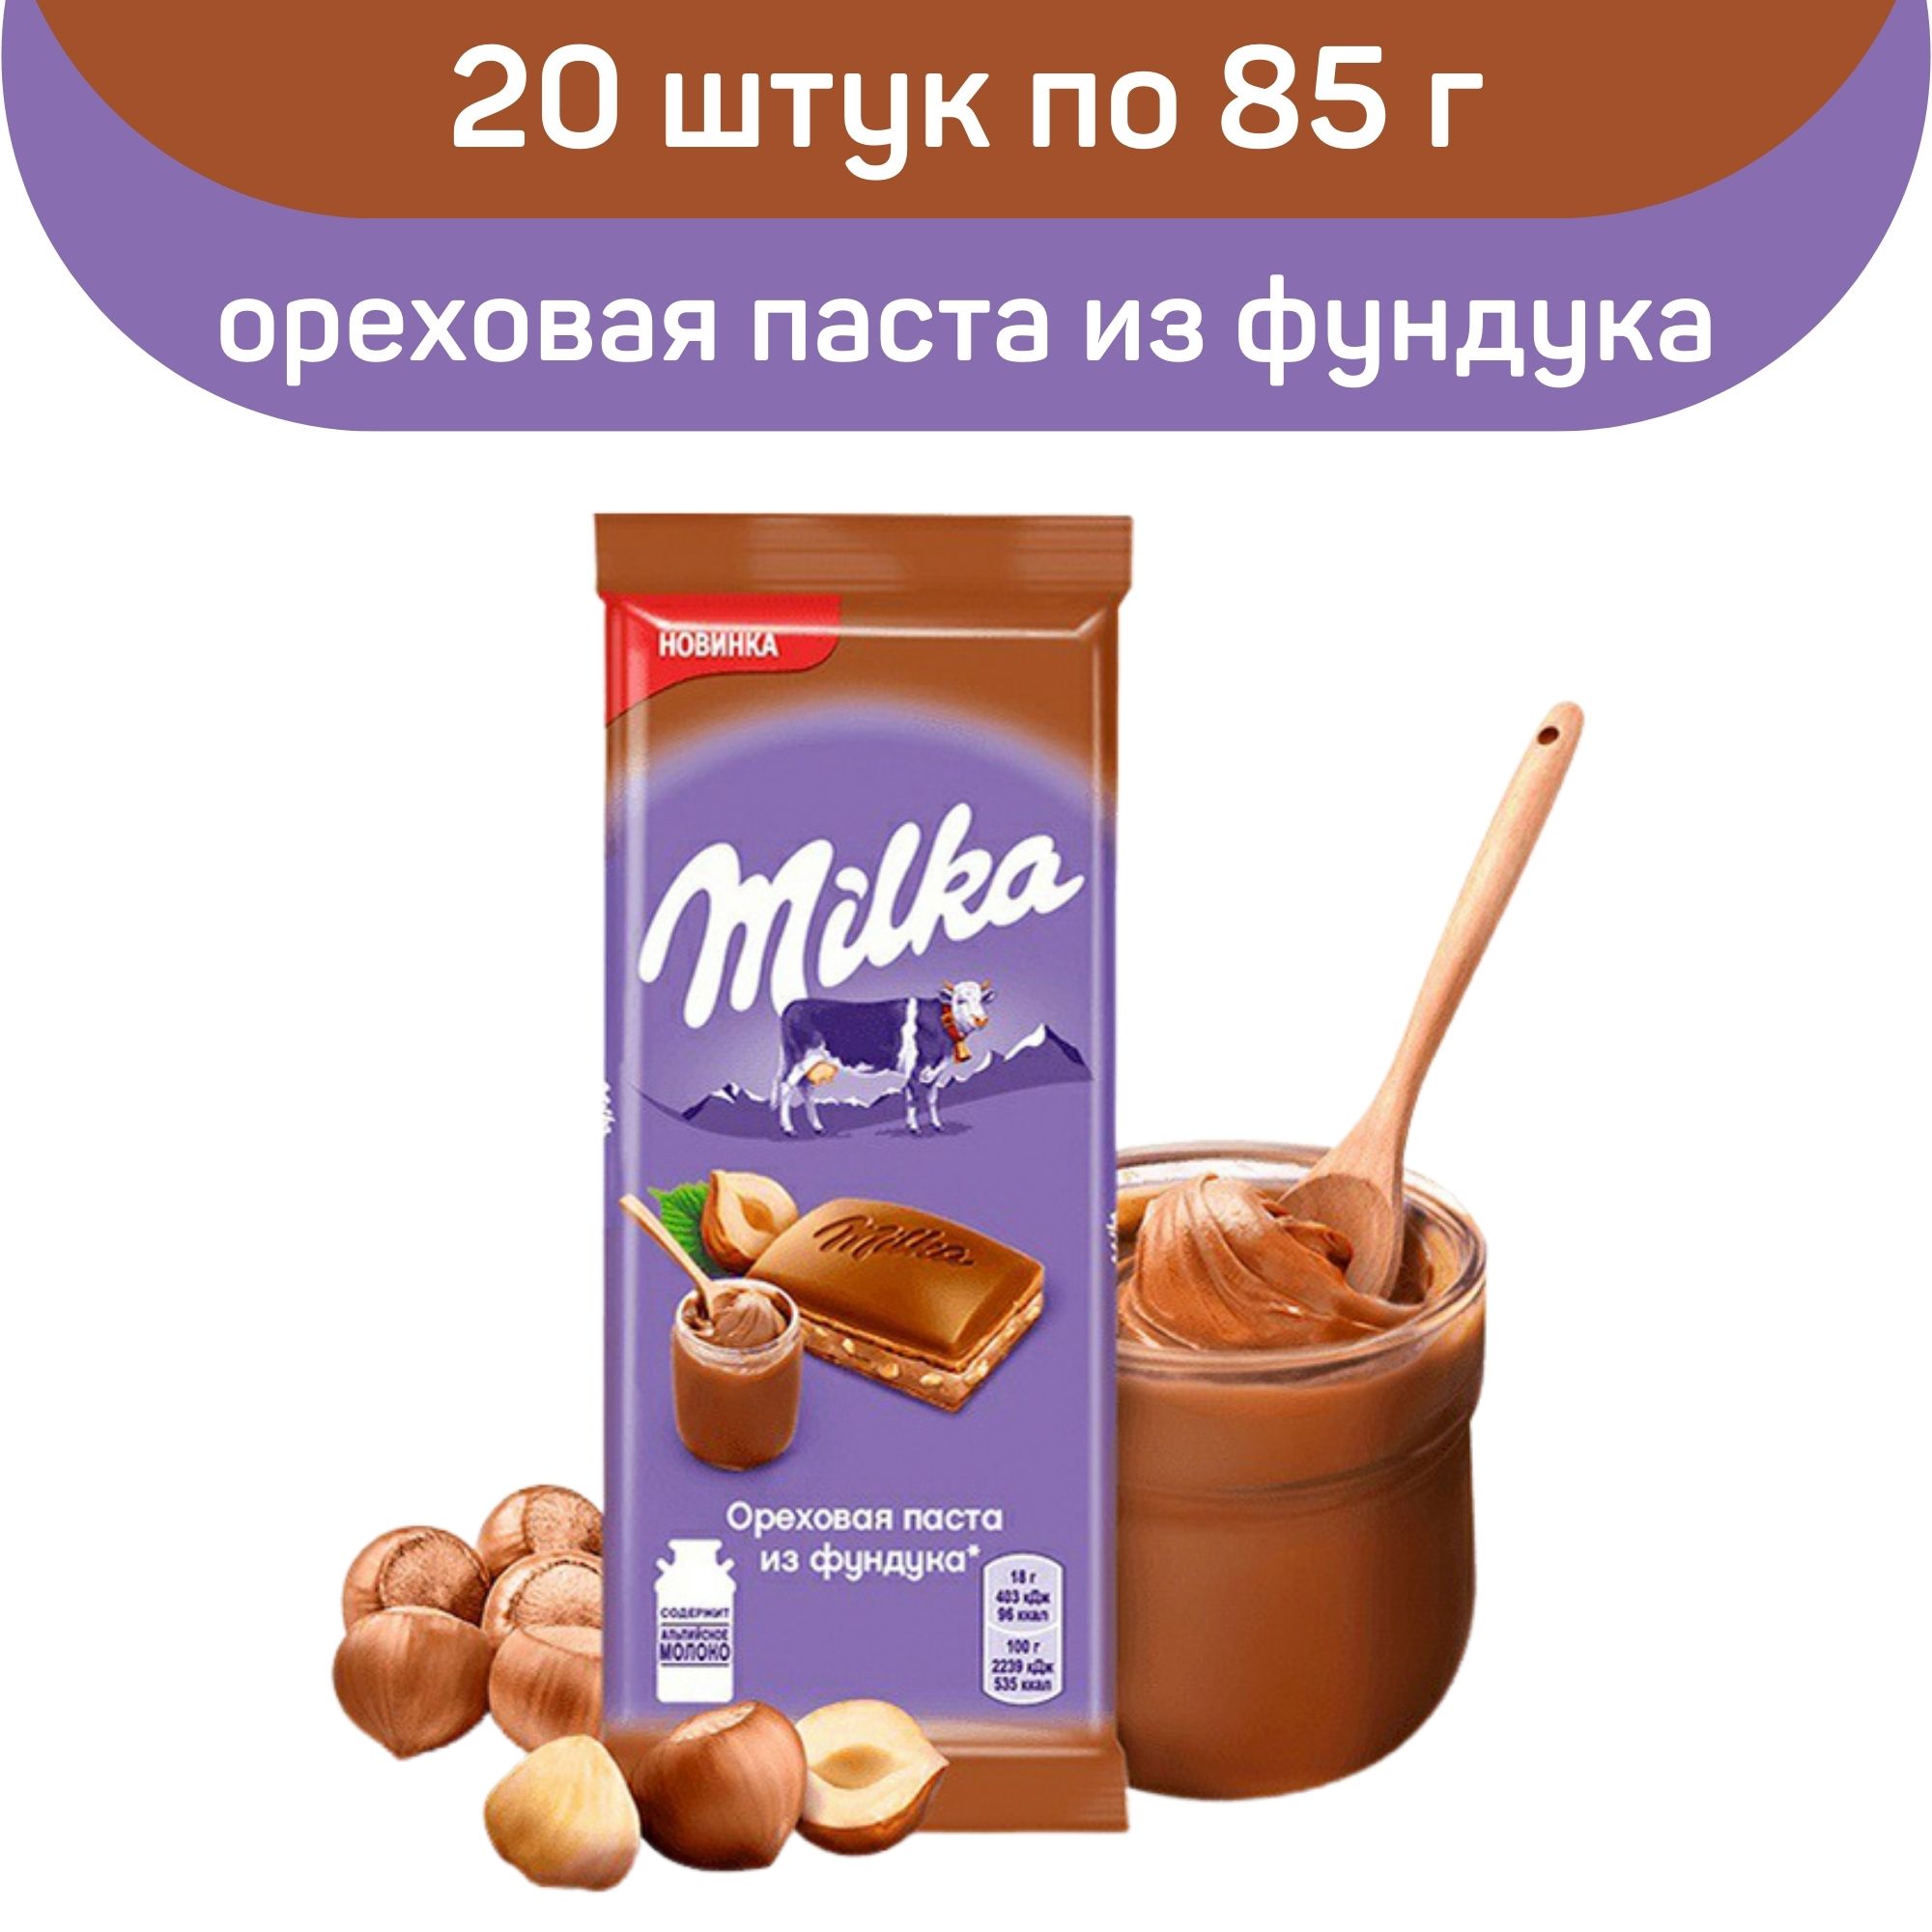 Шоколад молочный Milka с ореховой пастой из фундука и дробленым фундуком, 20 шт по 85 г